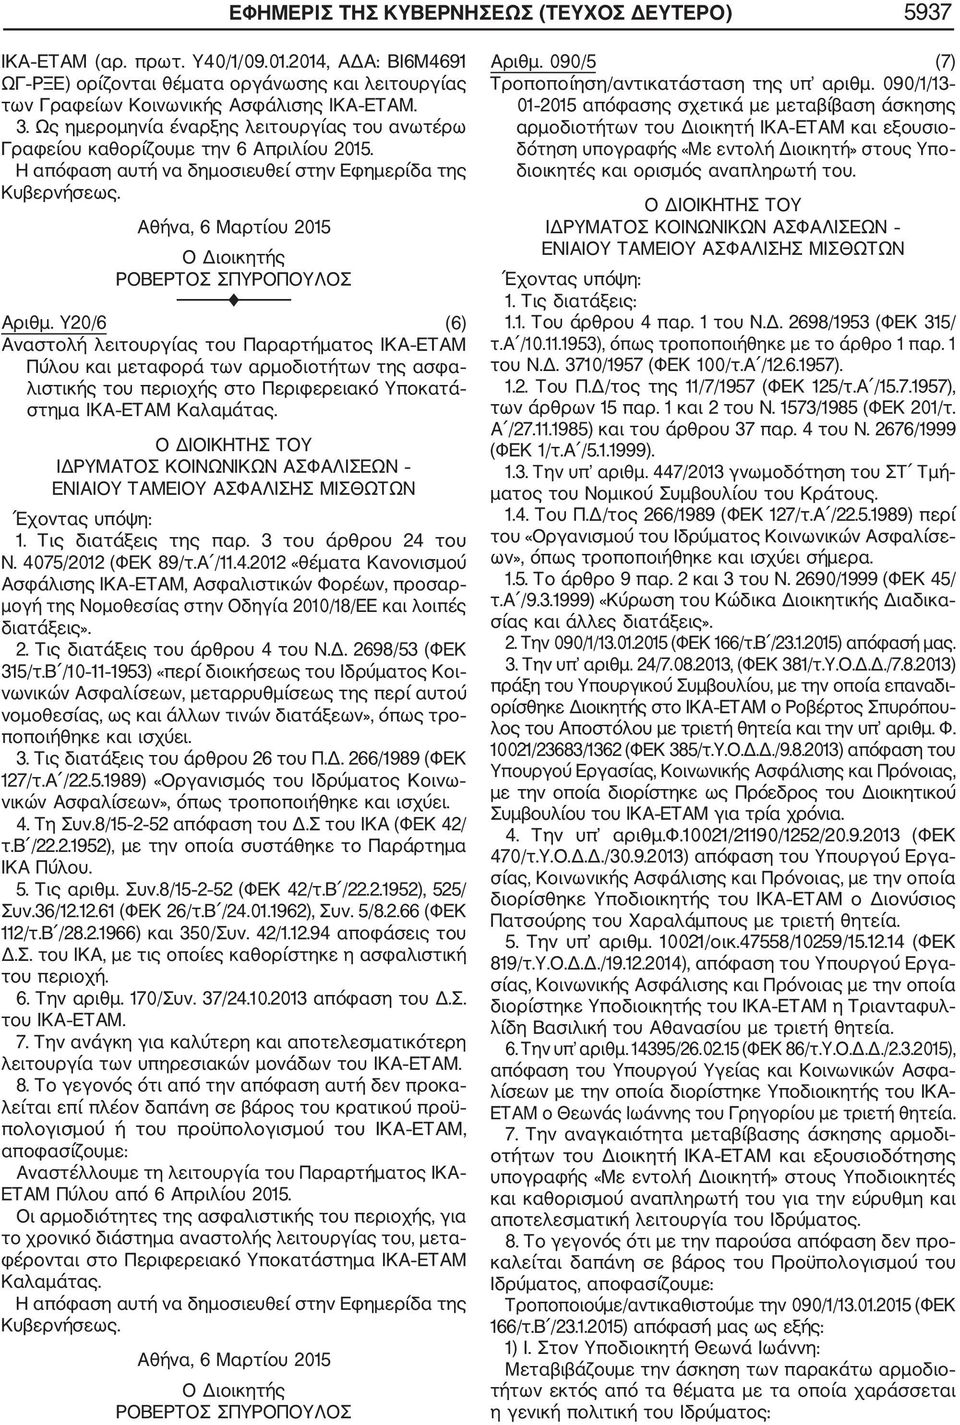 Υ20/6 (6) Αναστολή λειτουργίας του Παραρτήματος ΙΚΑ ΕΤΑΜ Πύλου και μεταφορά των αρμοδιοτήτων της ασφα λιστικής του περιοχής στο Περιφερειακό Υποκατά στημα ΙΚΑ ΕΤΑΜ Καλαμάτας.